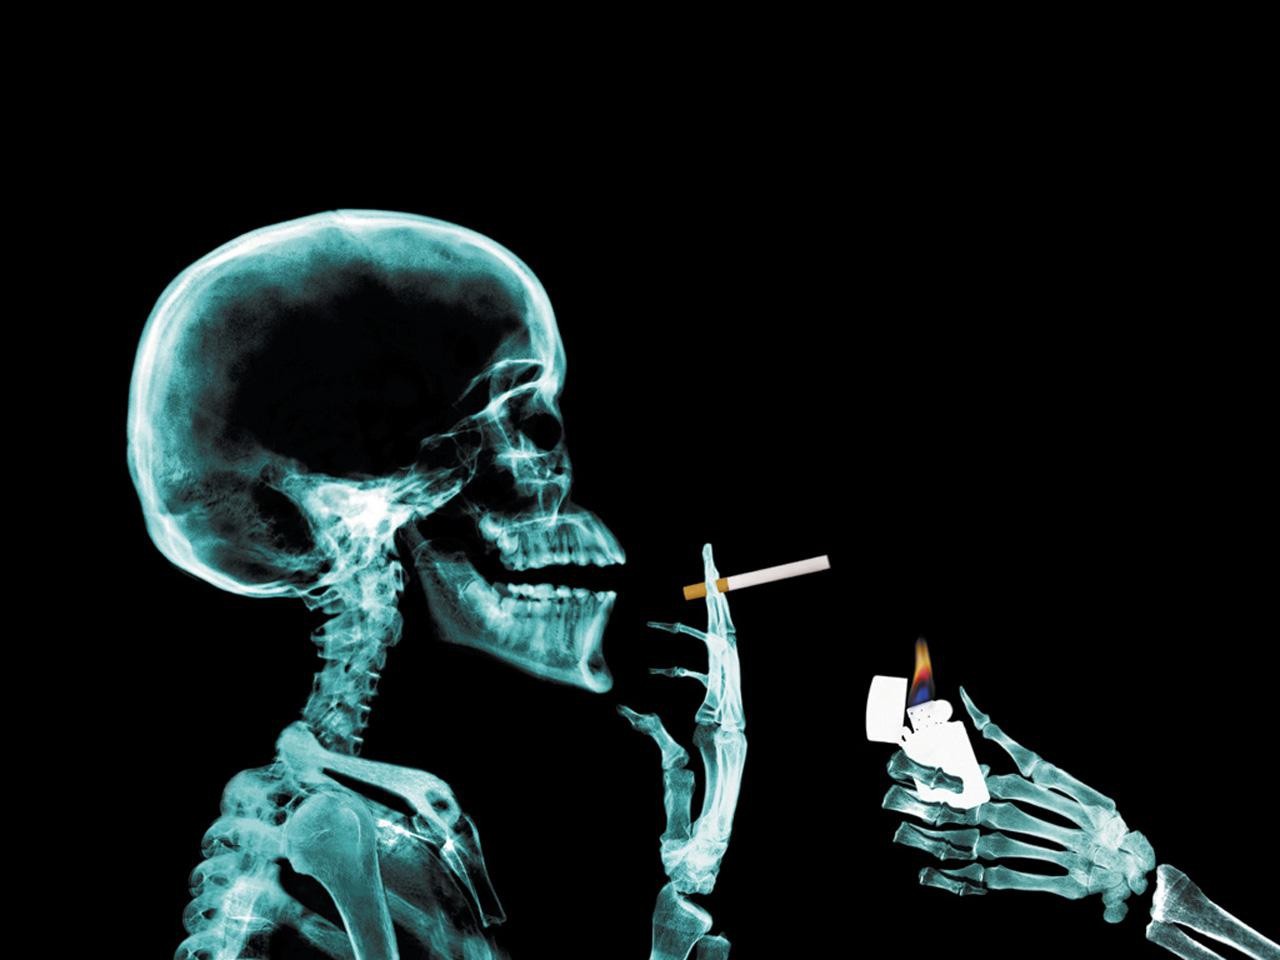 Black Blue Smoking Man In X-rays - Skull Smoking - HD Wallpaper 